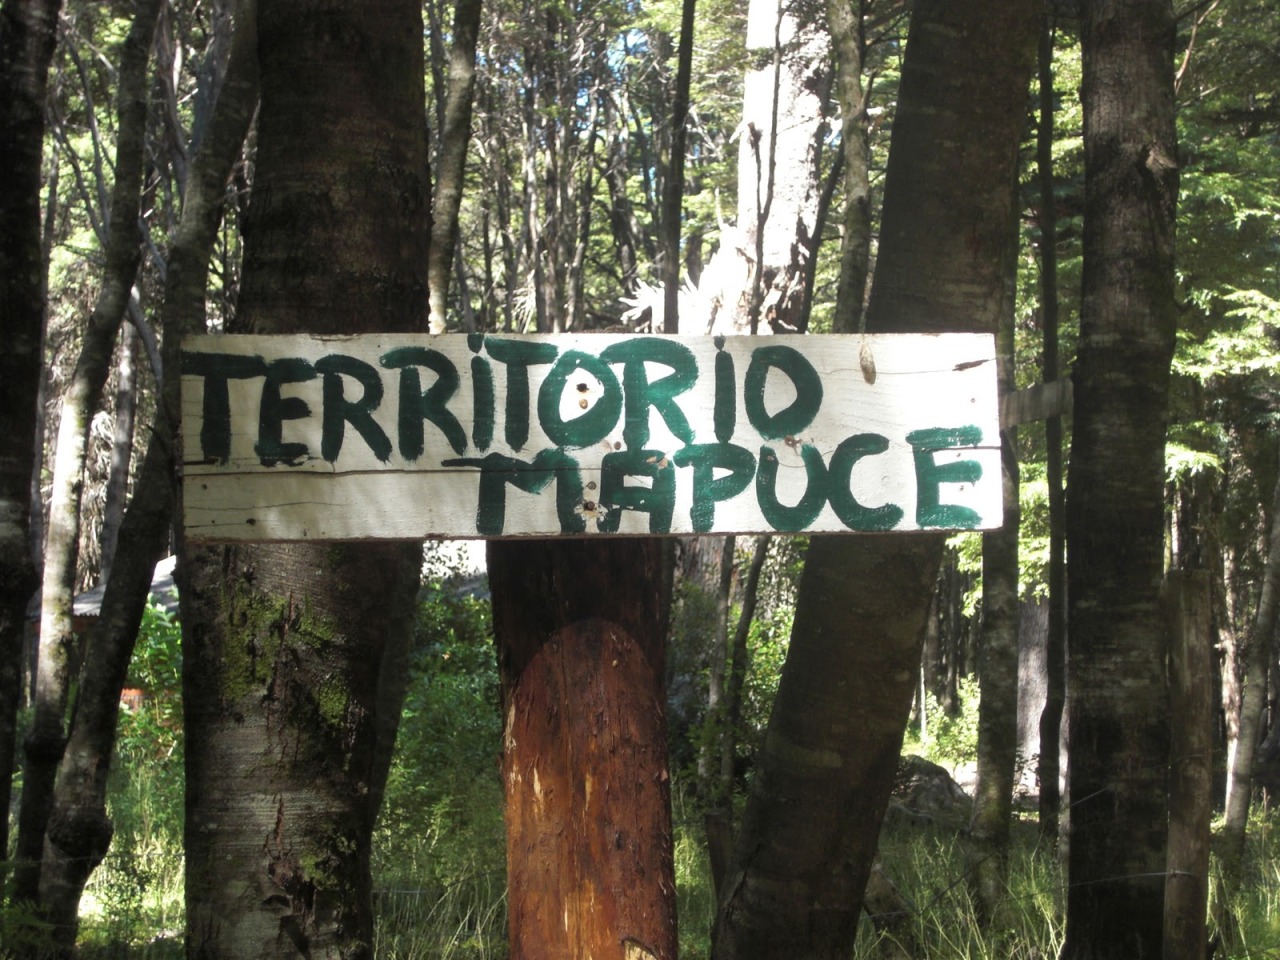 humorhistorico:  Antes de criticar al mapuche, lea esta historia.En los 80 Pinochet